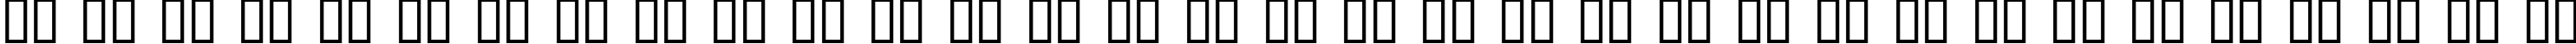 Пример написания русского алфавита шрифтом American Text